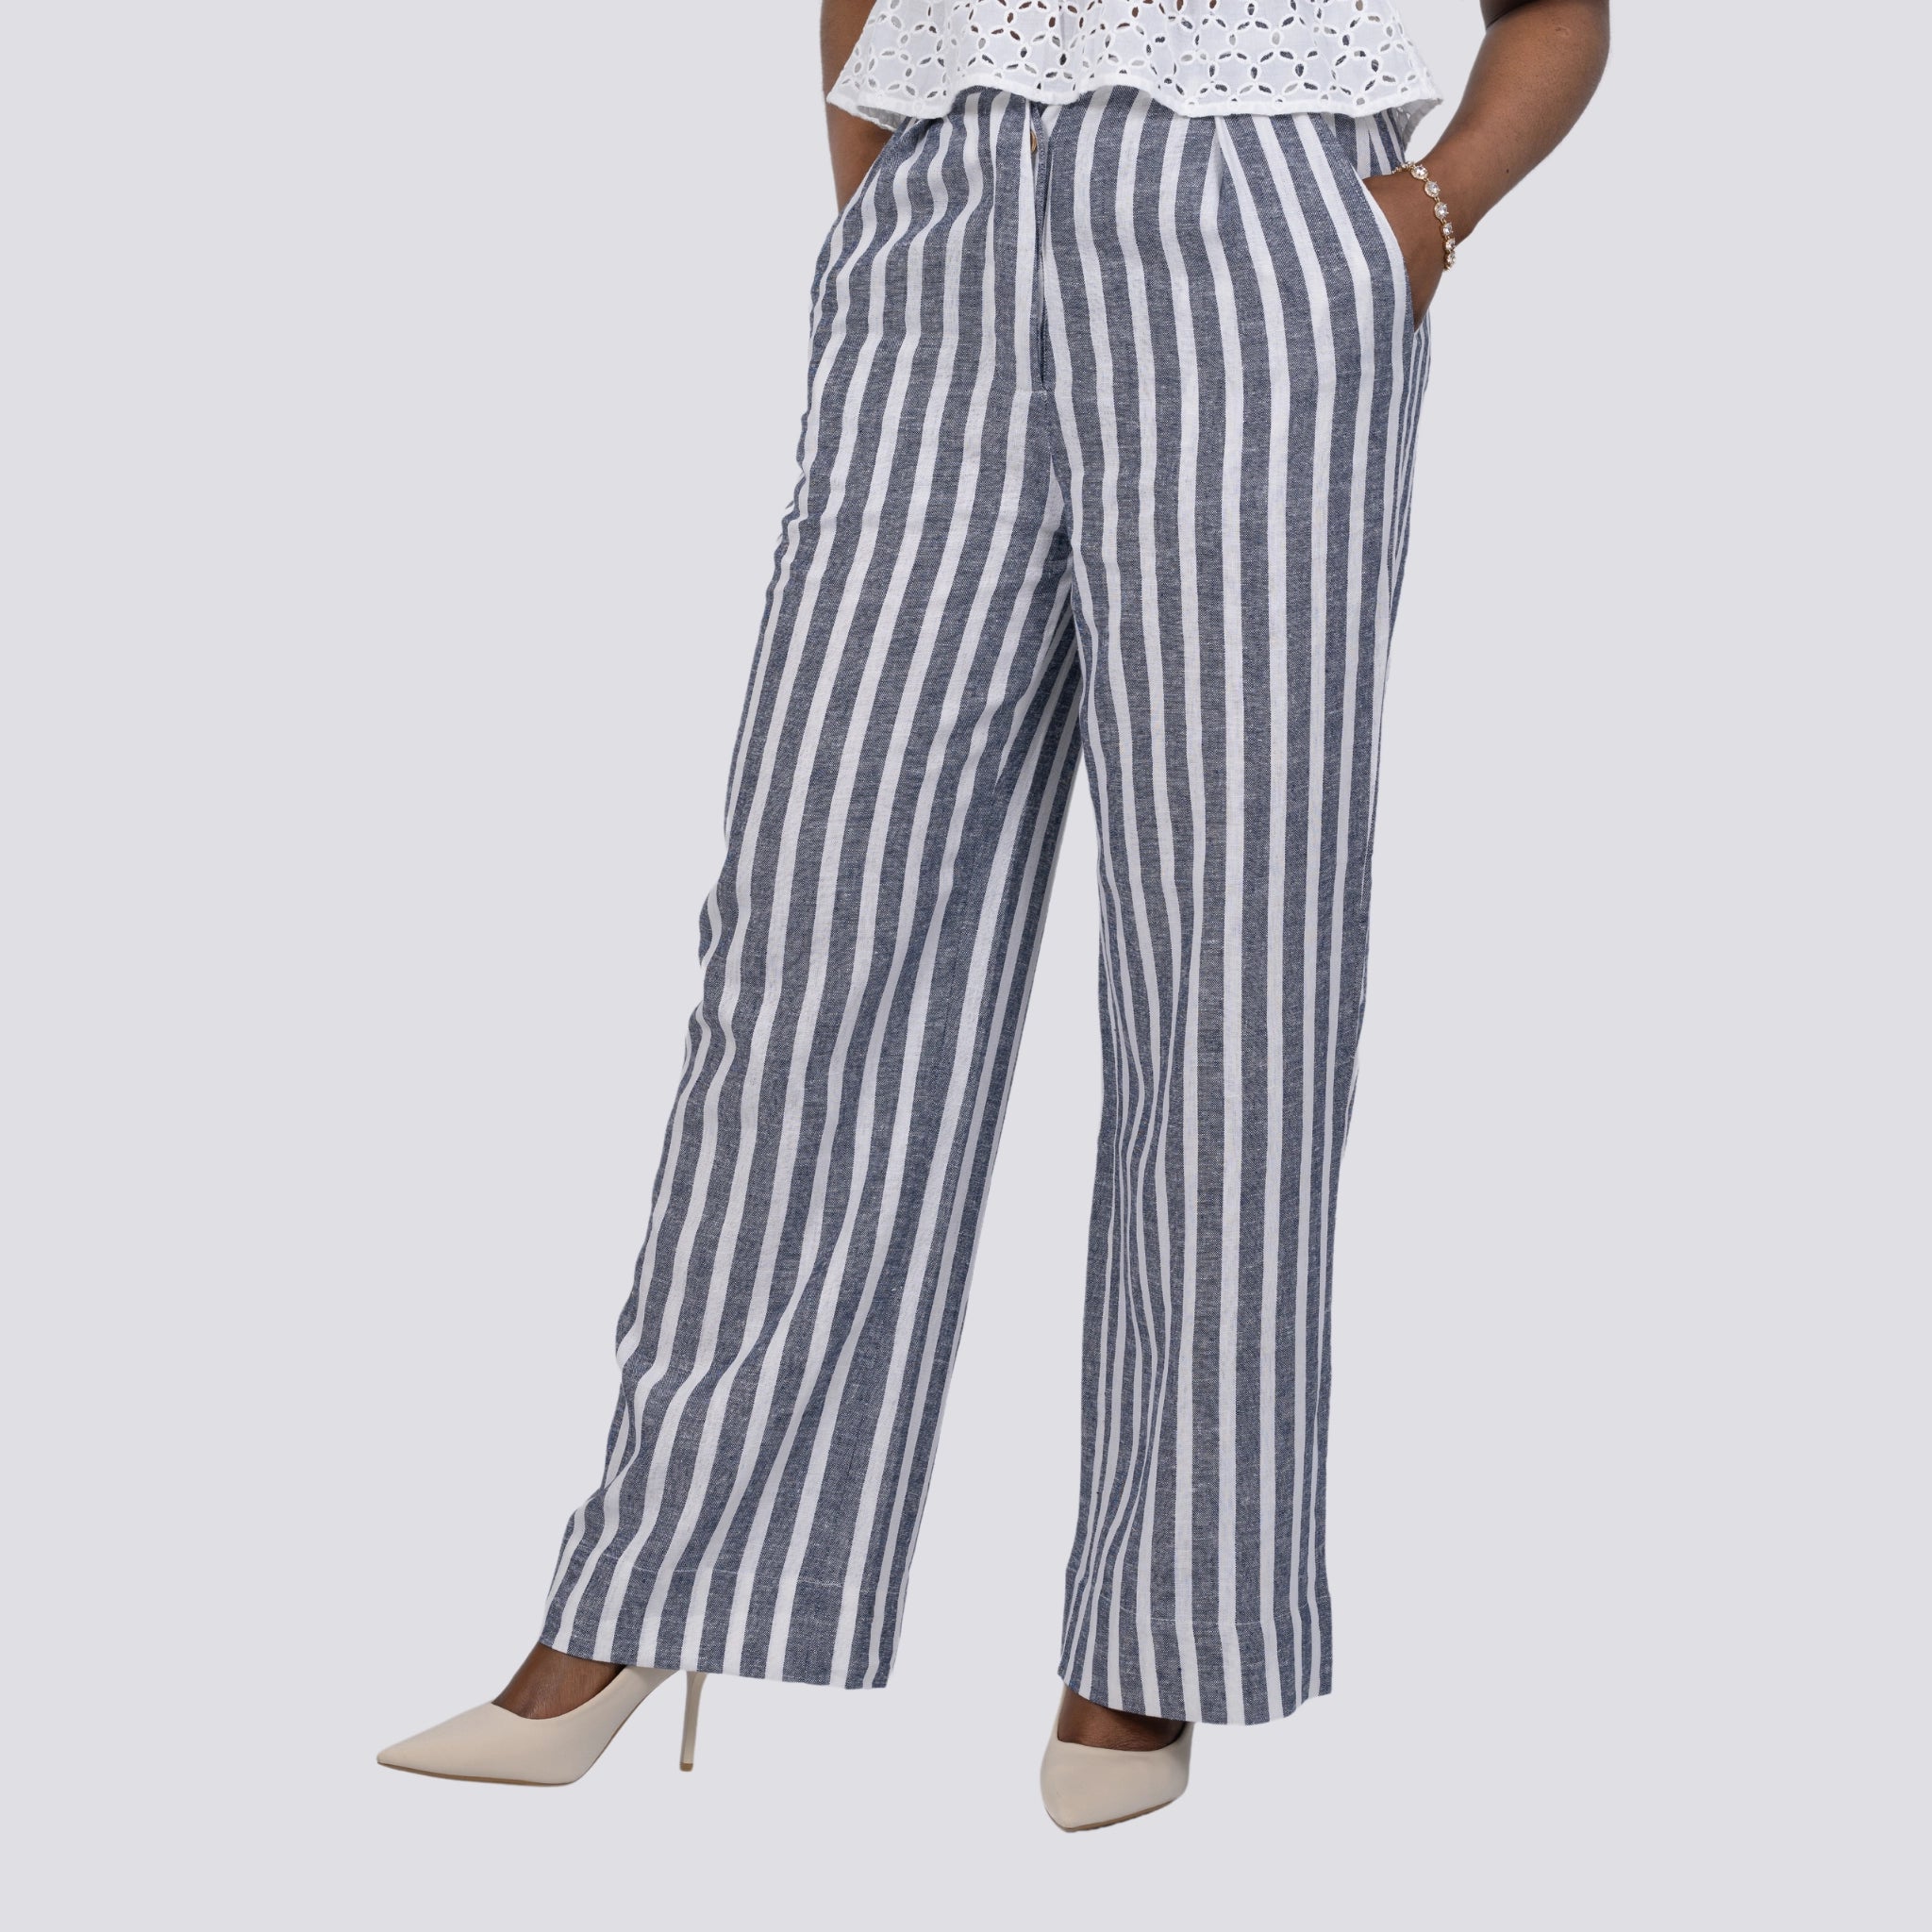 Monochrome Chic Linen Trousers